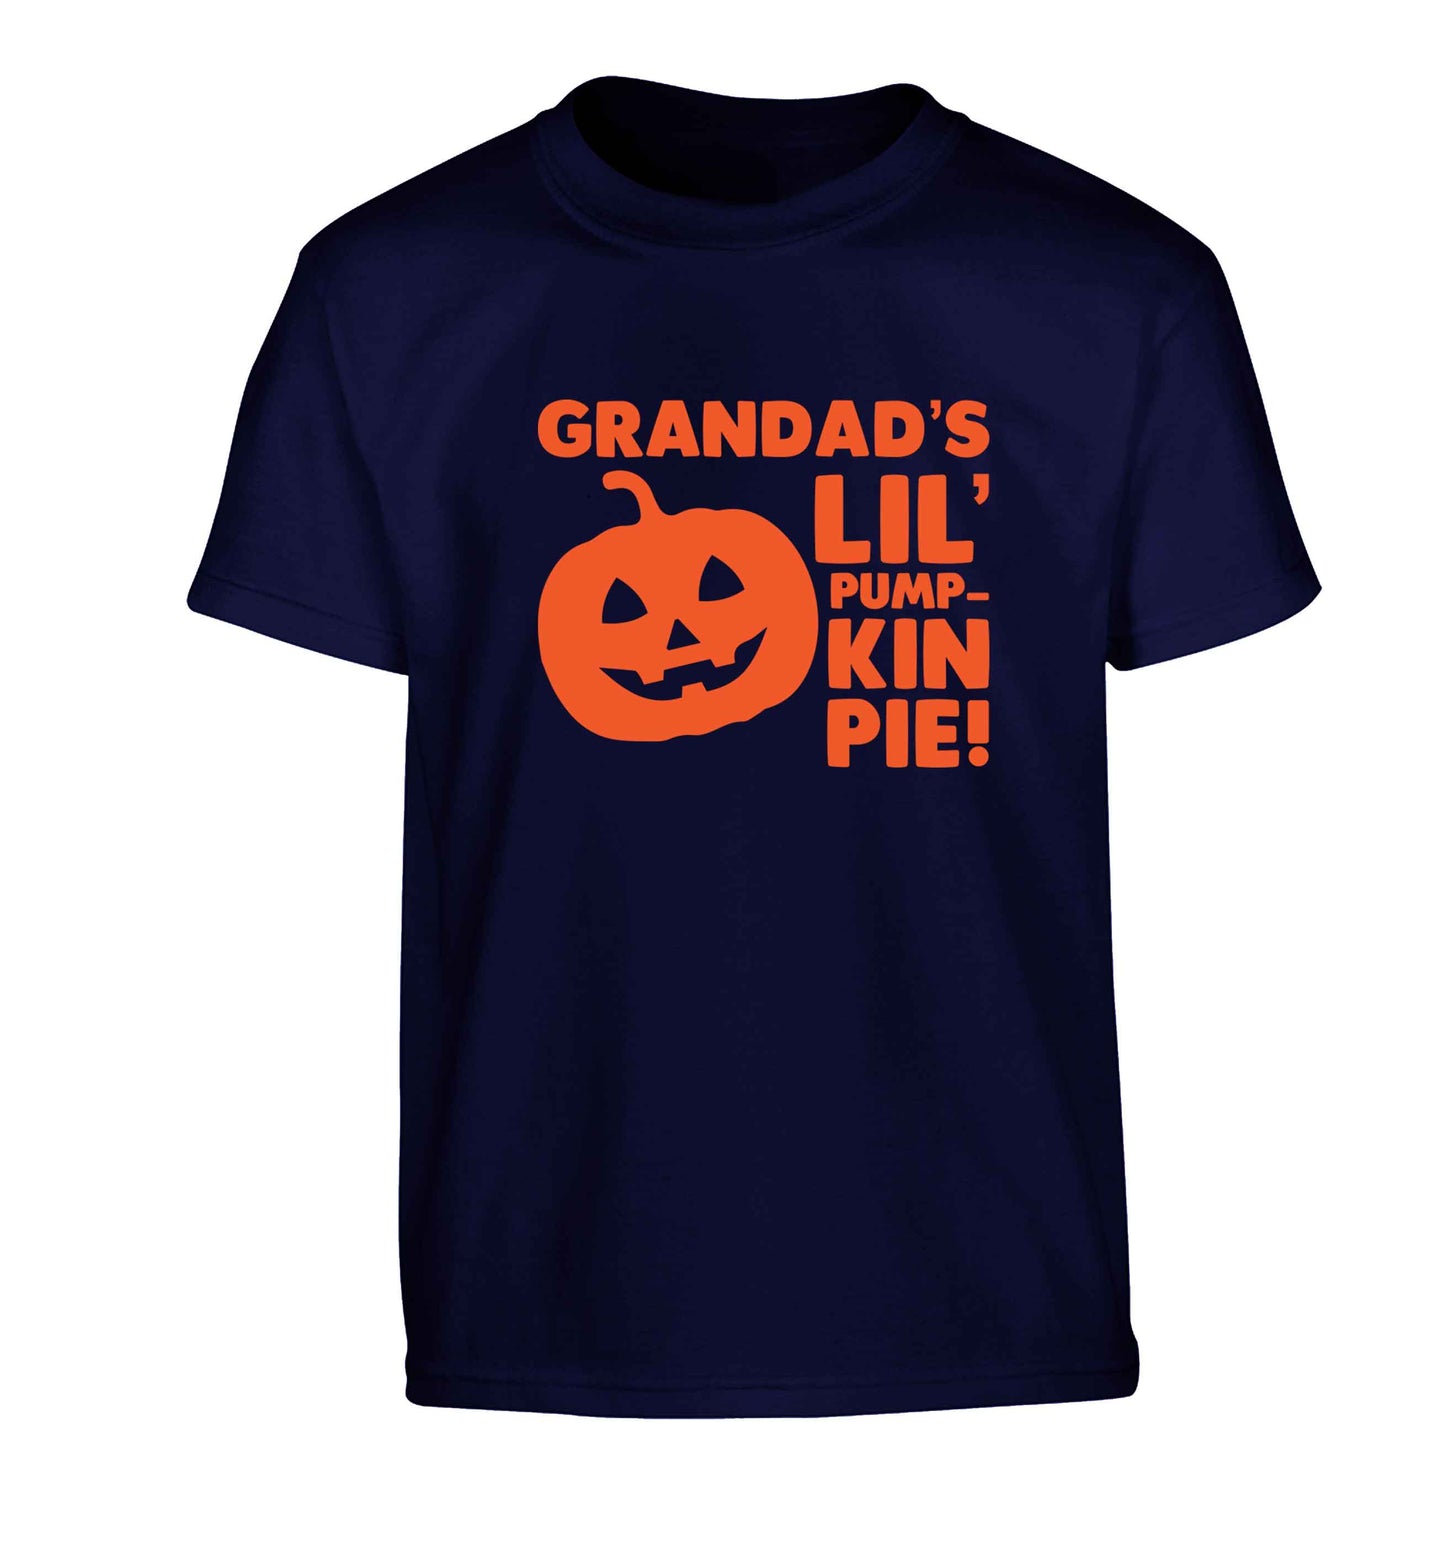 Grandad's lil' pumpkin pie Children's navy Tshirt 12-13 Years